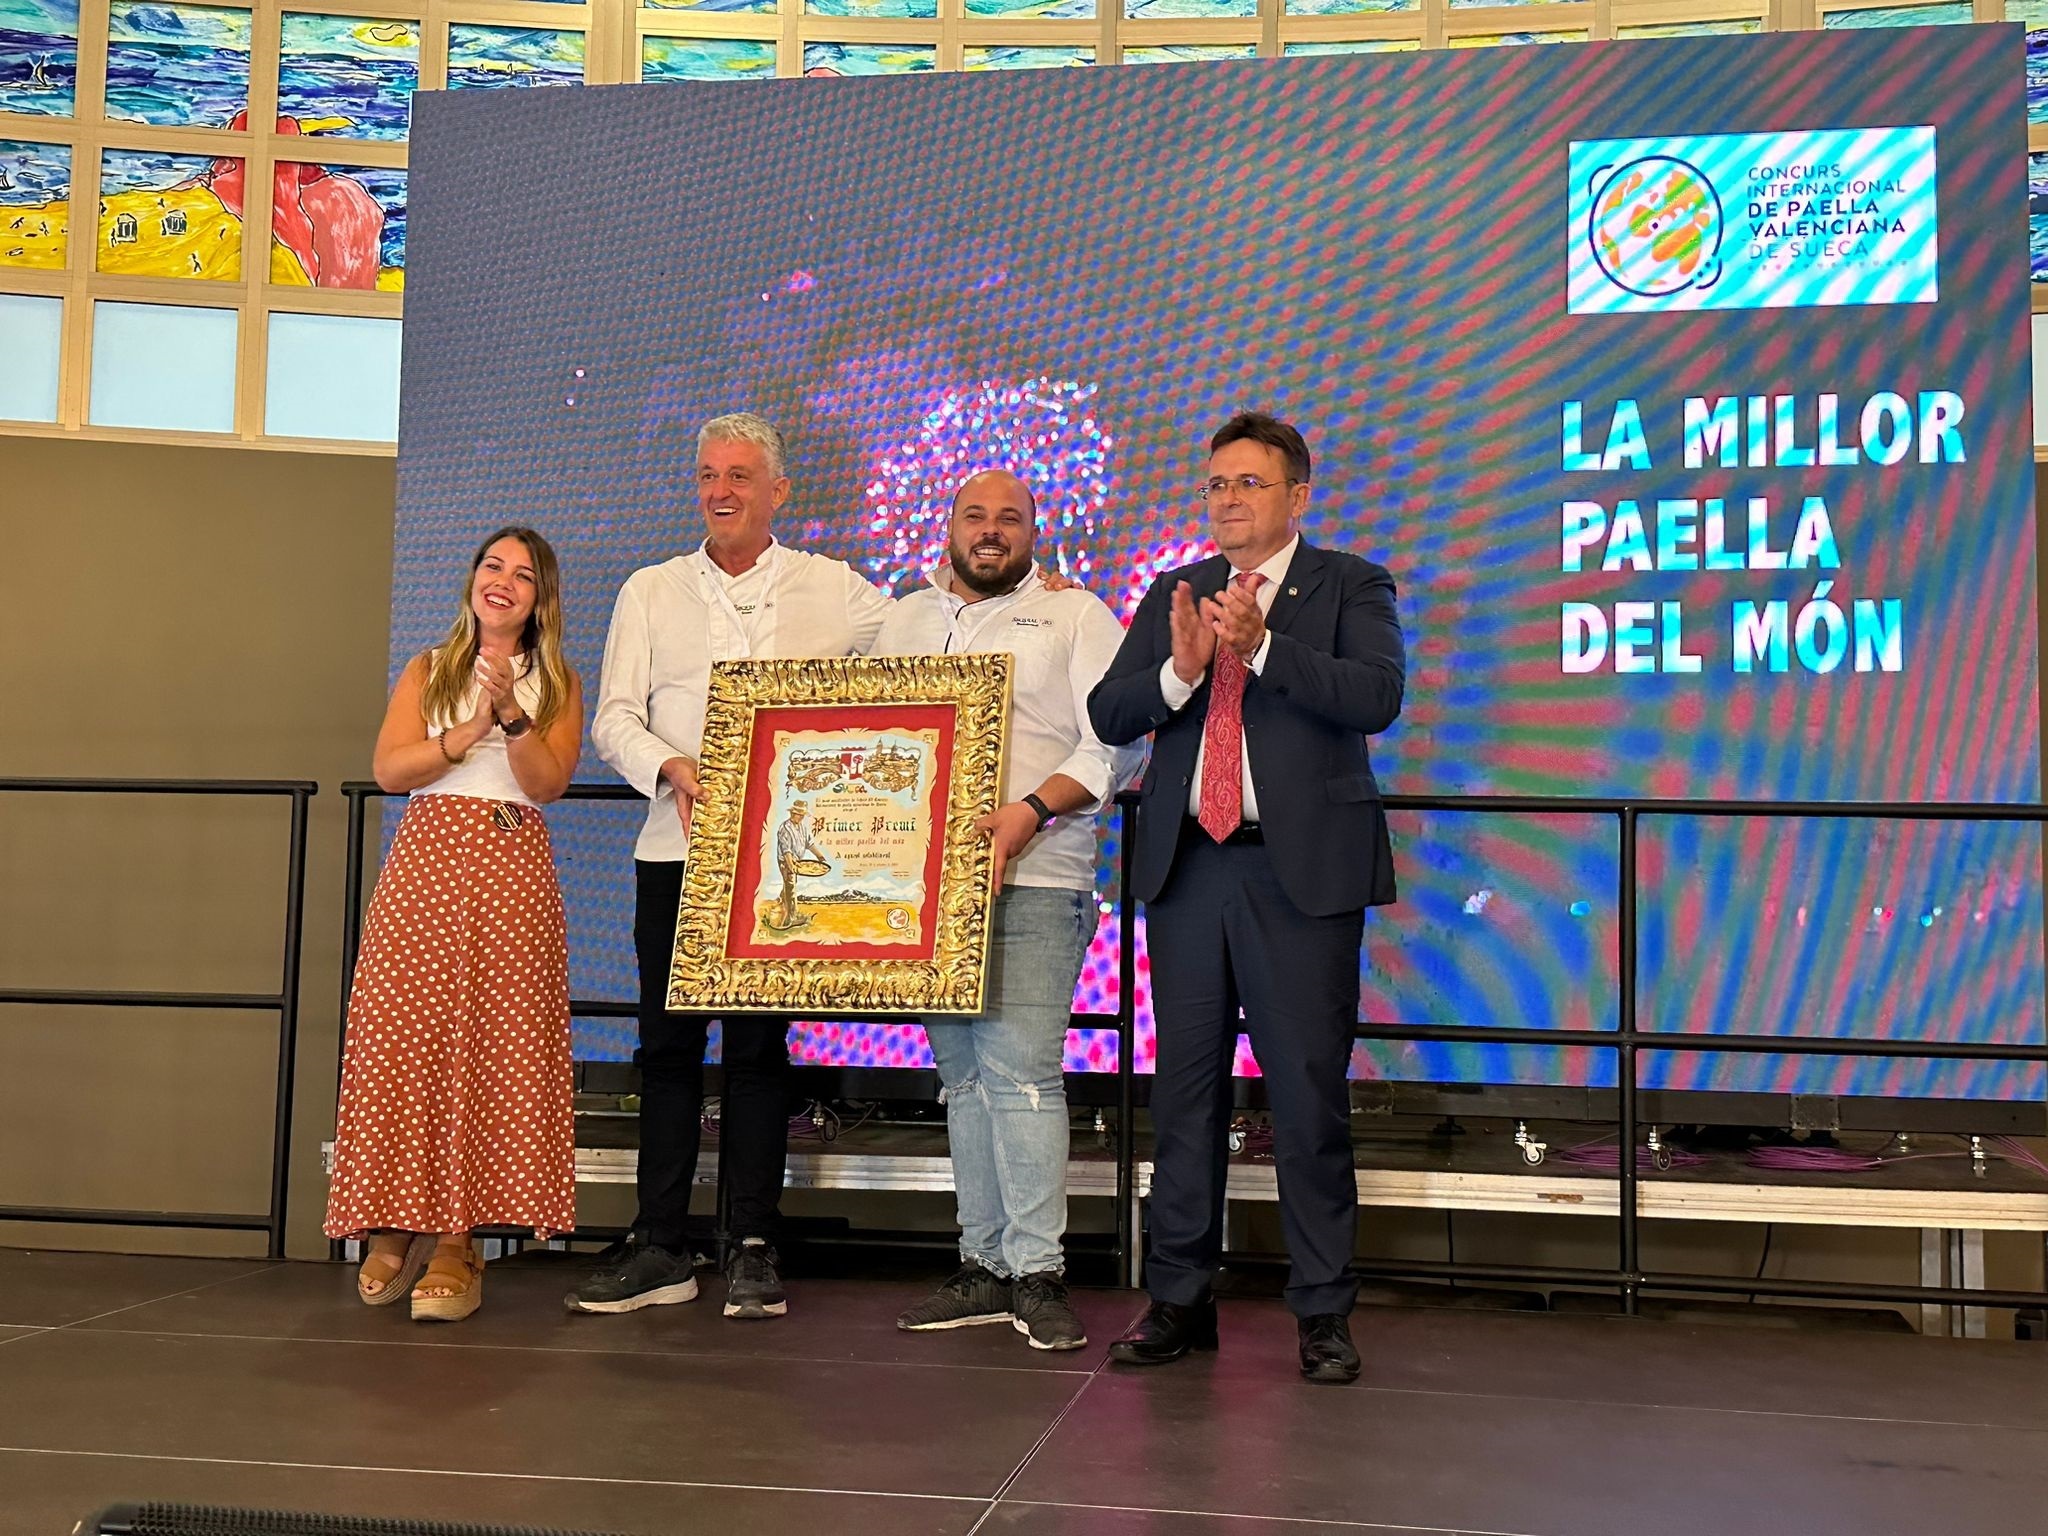 El Restaurante Sequial 20 de Sueca se lleva el premio a la mejor paella del mundo